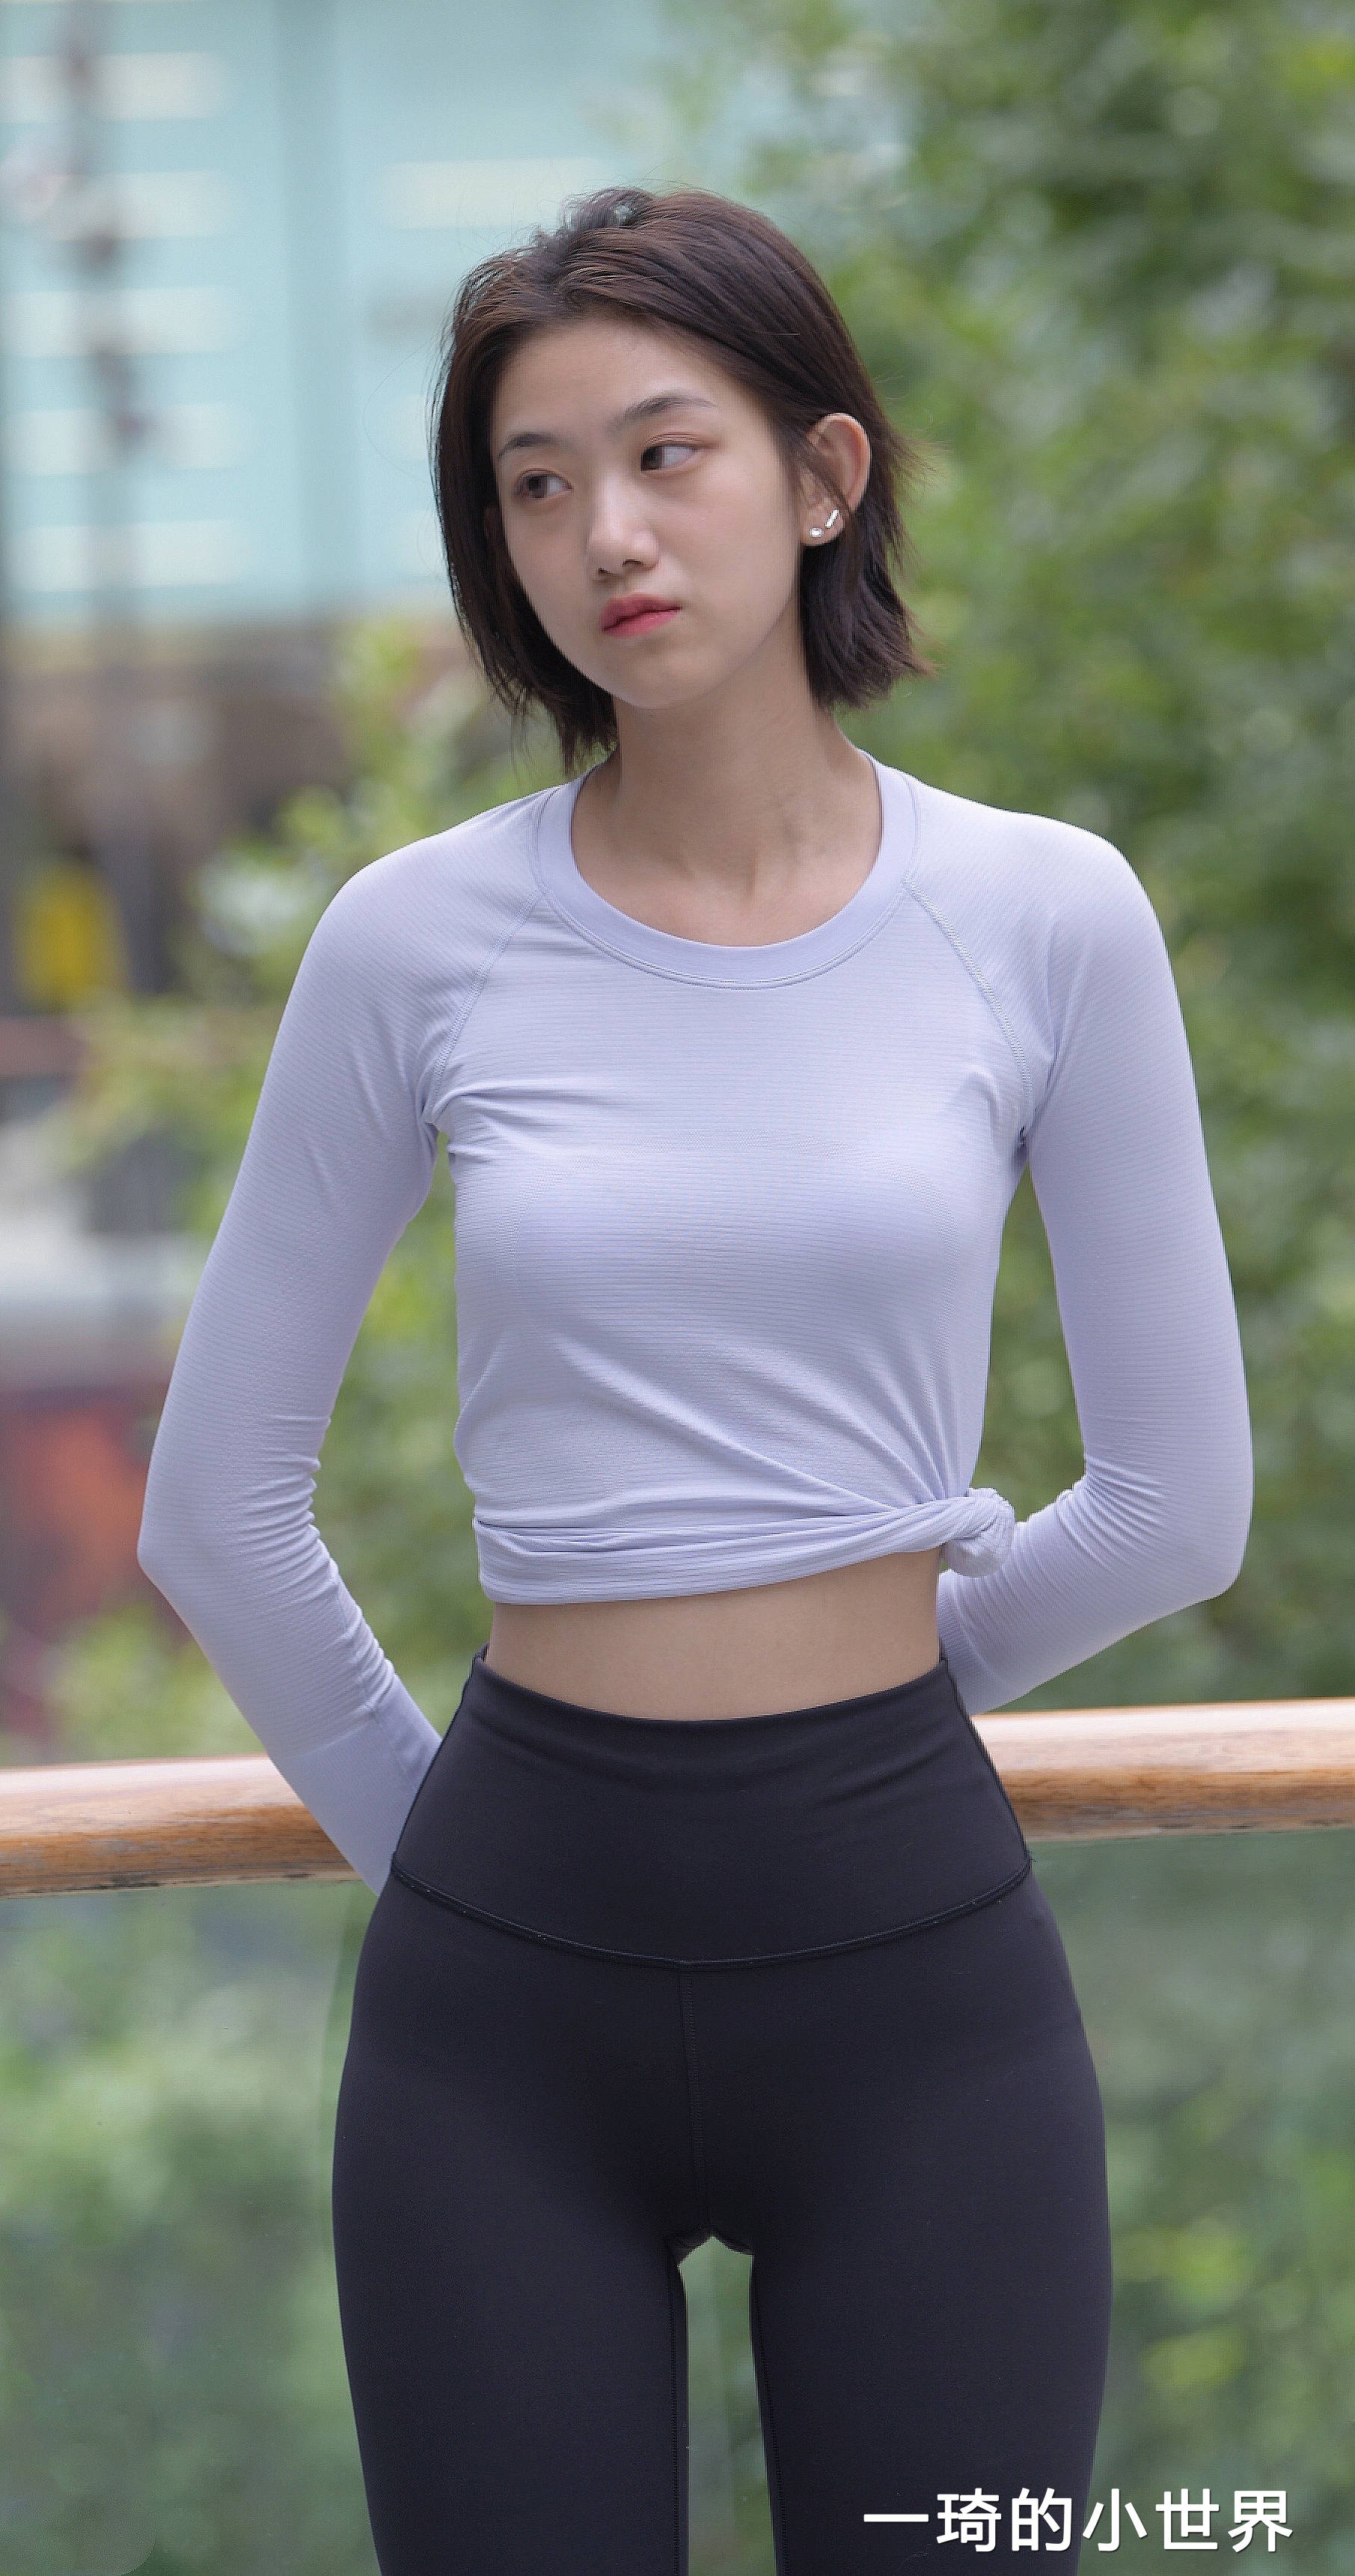 一件简单的长袖t恤和紧身瑜伽裤组合,可以通过简单的穿搭技巧来突出